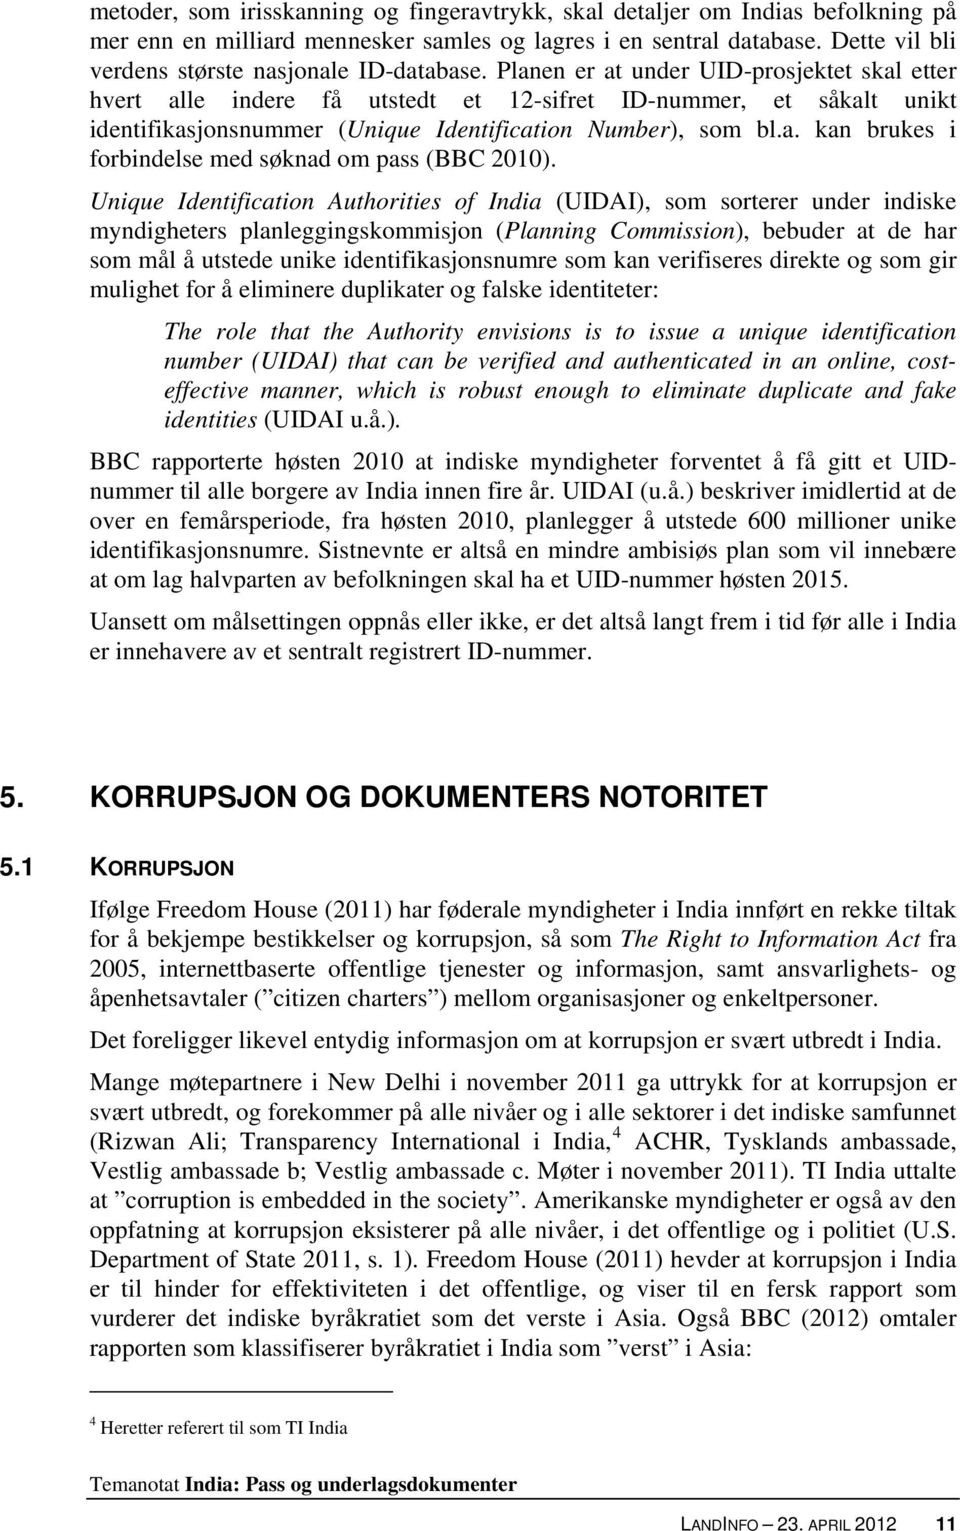 Planen er at under UID-prosjektet skal etter hvert alle indere få utstedt et 12-sifret ID-nummer, et såkalt unikt identifikasjonsnummer (Unique Identification Number), som bl.a. kan brukes i forbindelse med søknad om pass (BBC 2010).